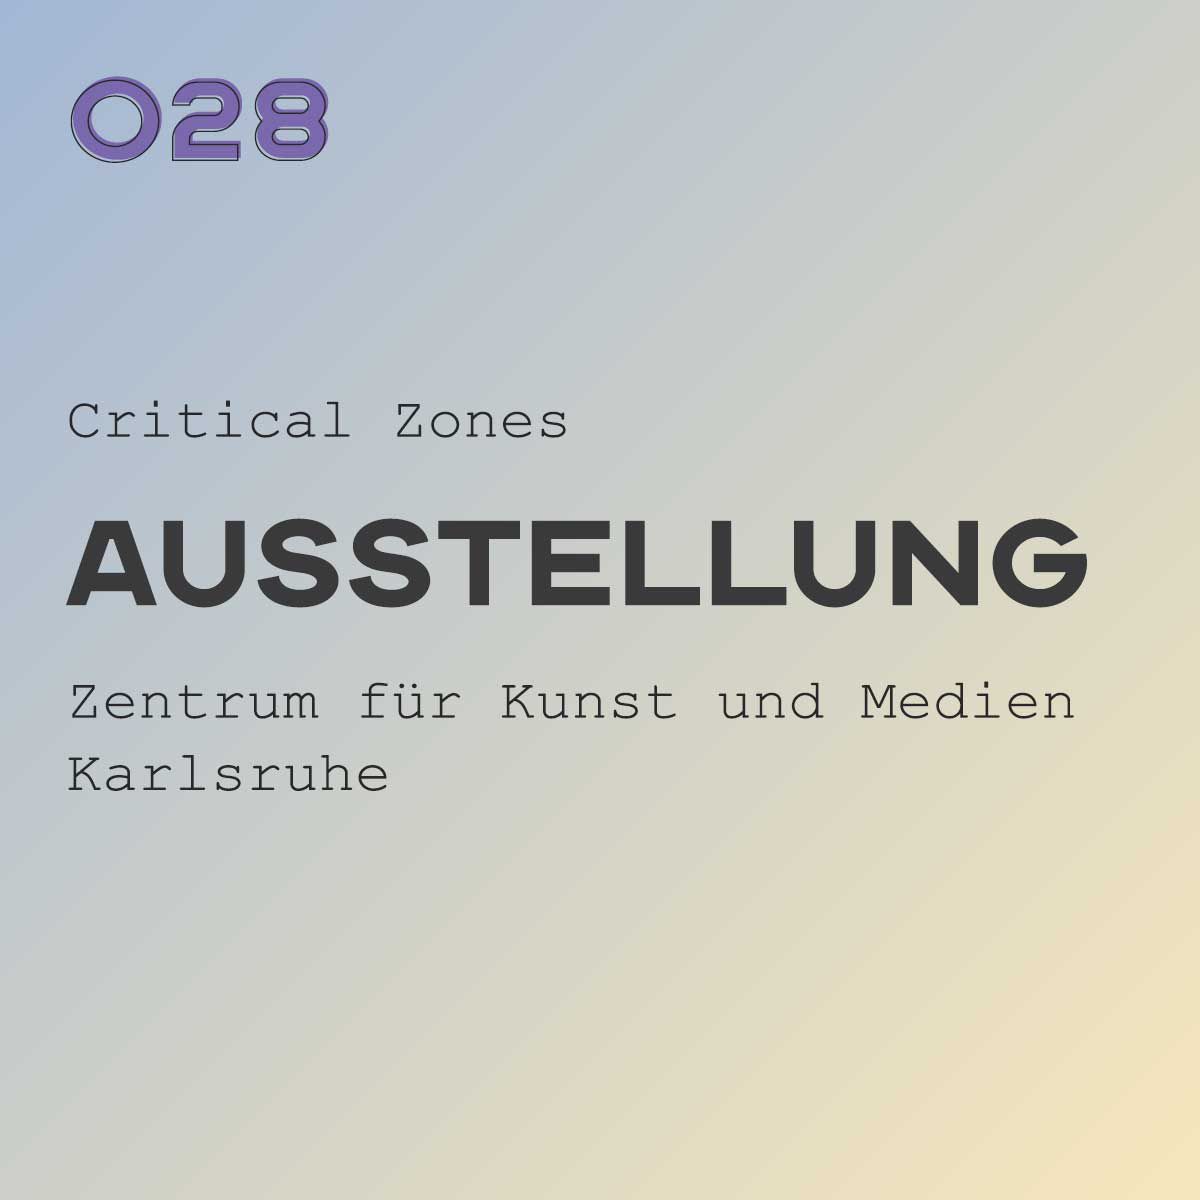 ZKM Karlsruhe: Austellung mit interaktiven Formaten - dc;wd